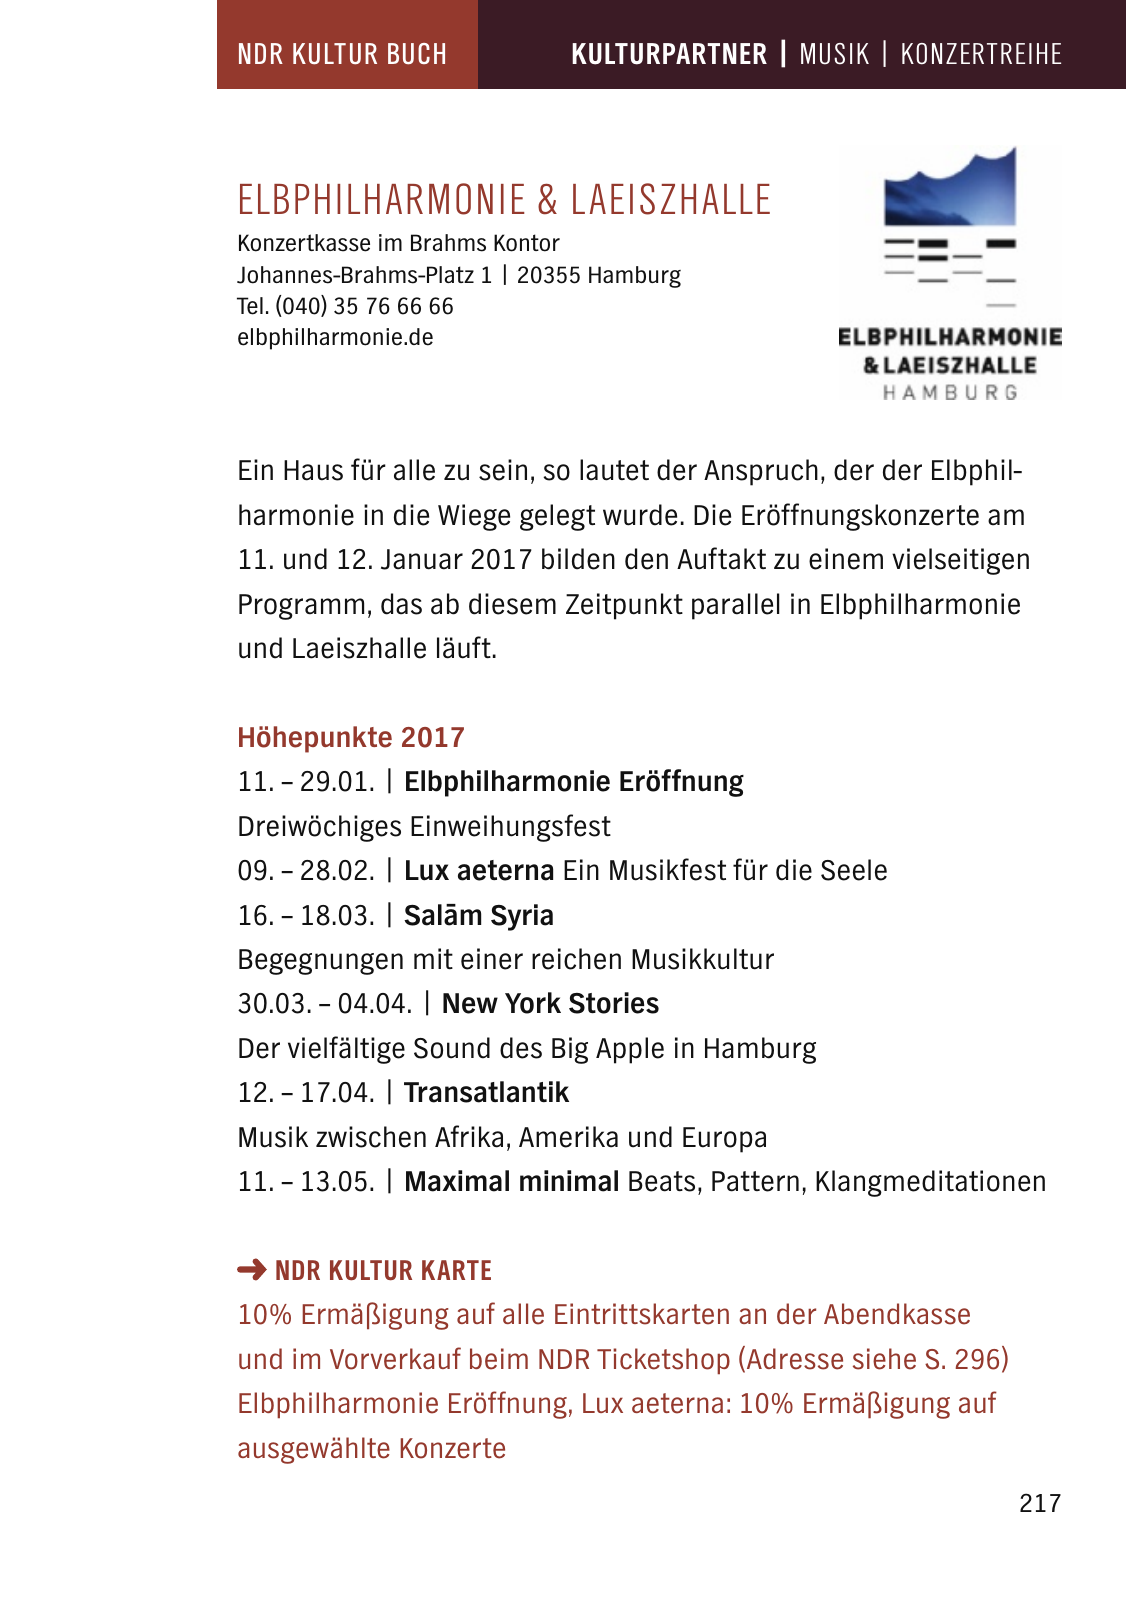 Vorschau NDR Kultur Buch 2017 Seite 219